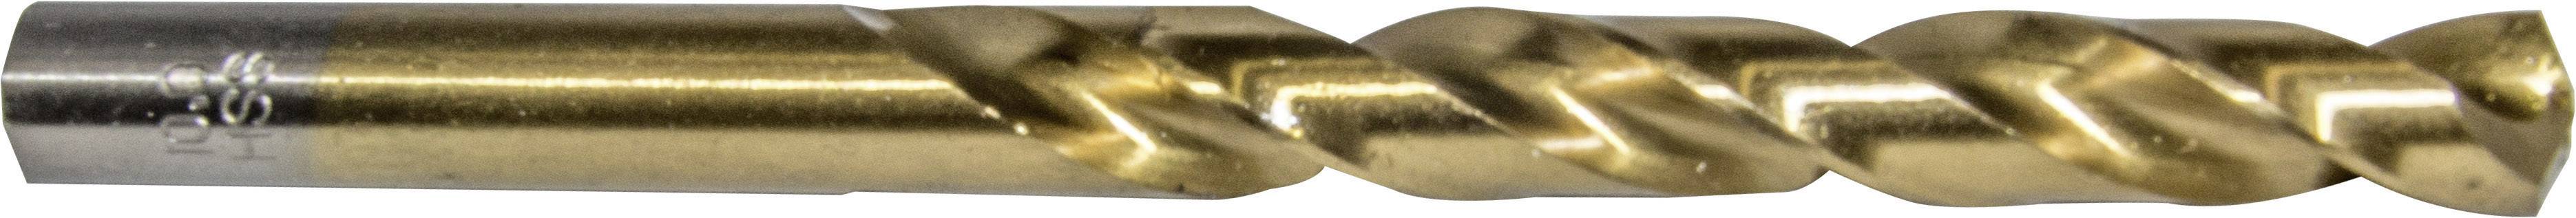 HELLER 29267 2 Metall-Spiralbohrer 1 Stück 6.5 mm Gesamtlänge 101 mm 1 St.